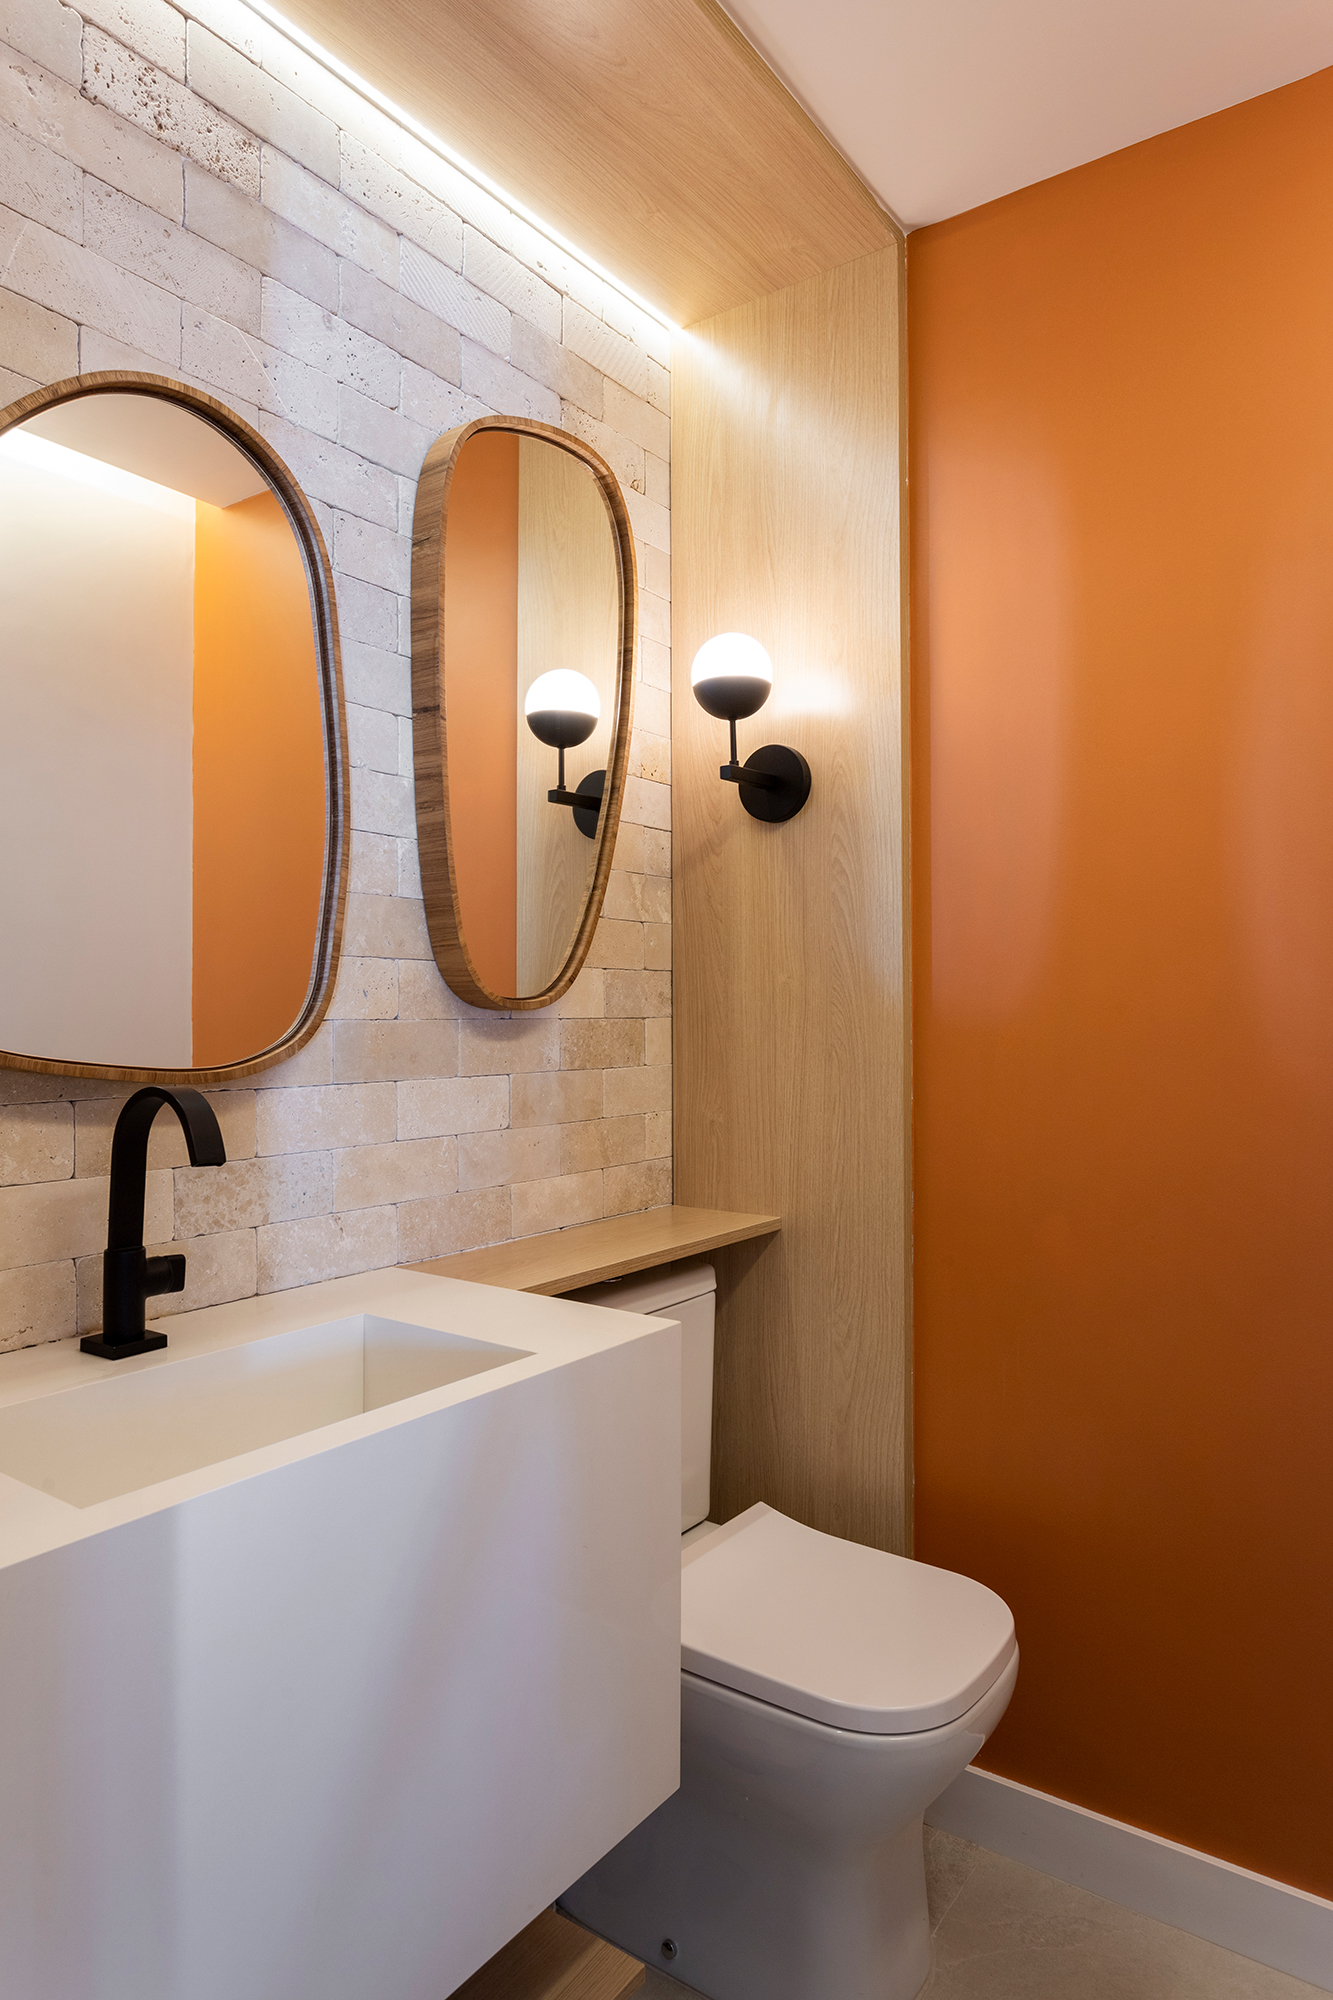 Apartamento ganha canto zen com rede de balanço e chão de pedriscos. Projeto de Interni Arquitetura. Na foto, lavabo com parede de tijolo e parede laranja.